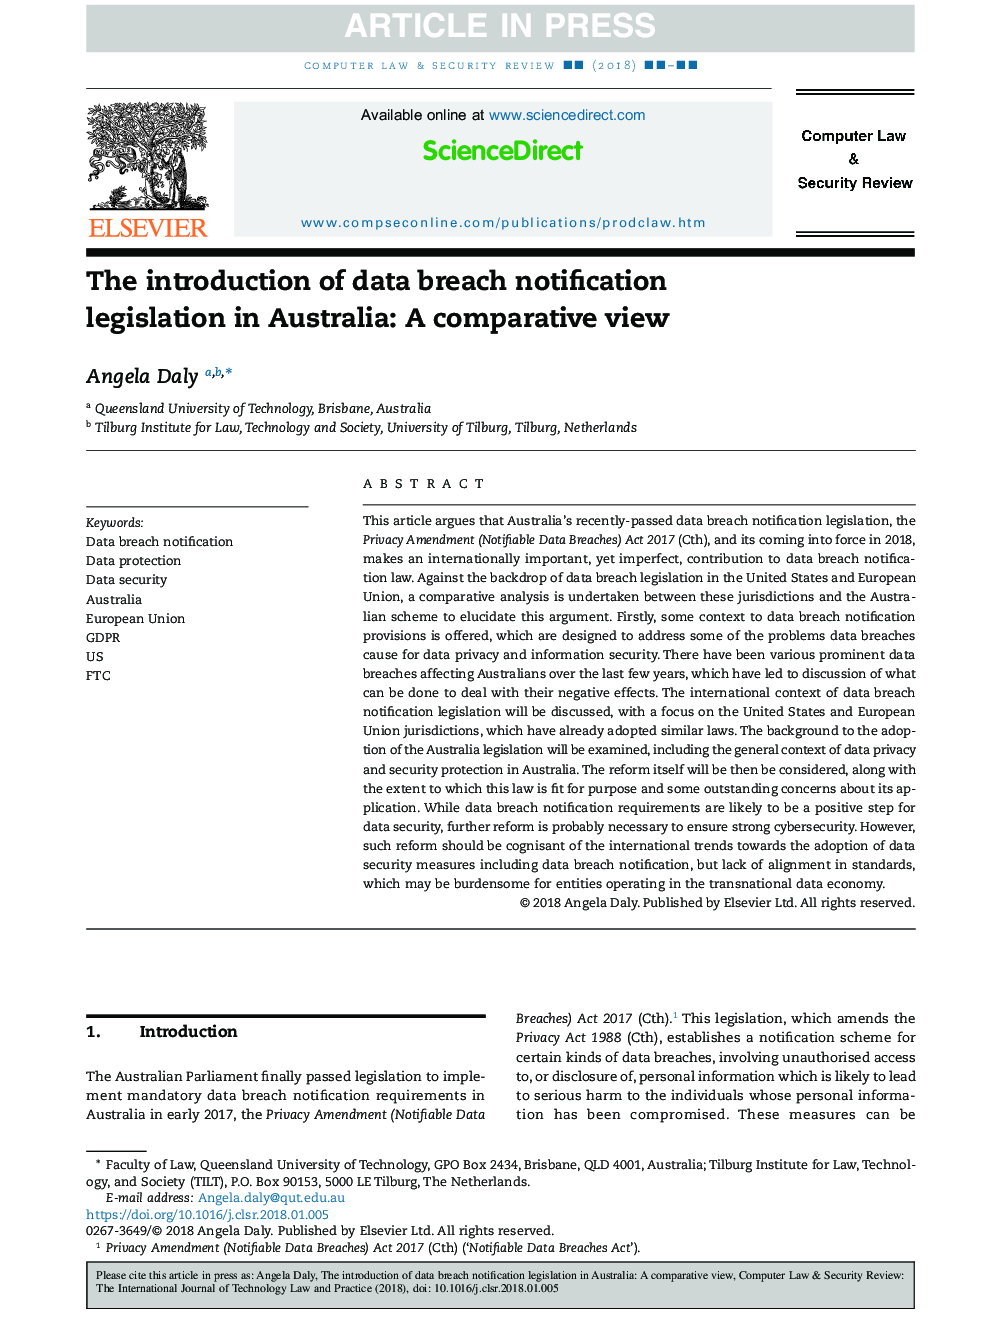 معرفی قوانین اطلاع رسانی نقض اطلاعات در استرالیا: دیدگاه مقایسه ای 